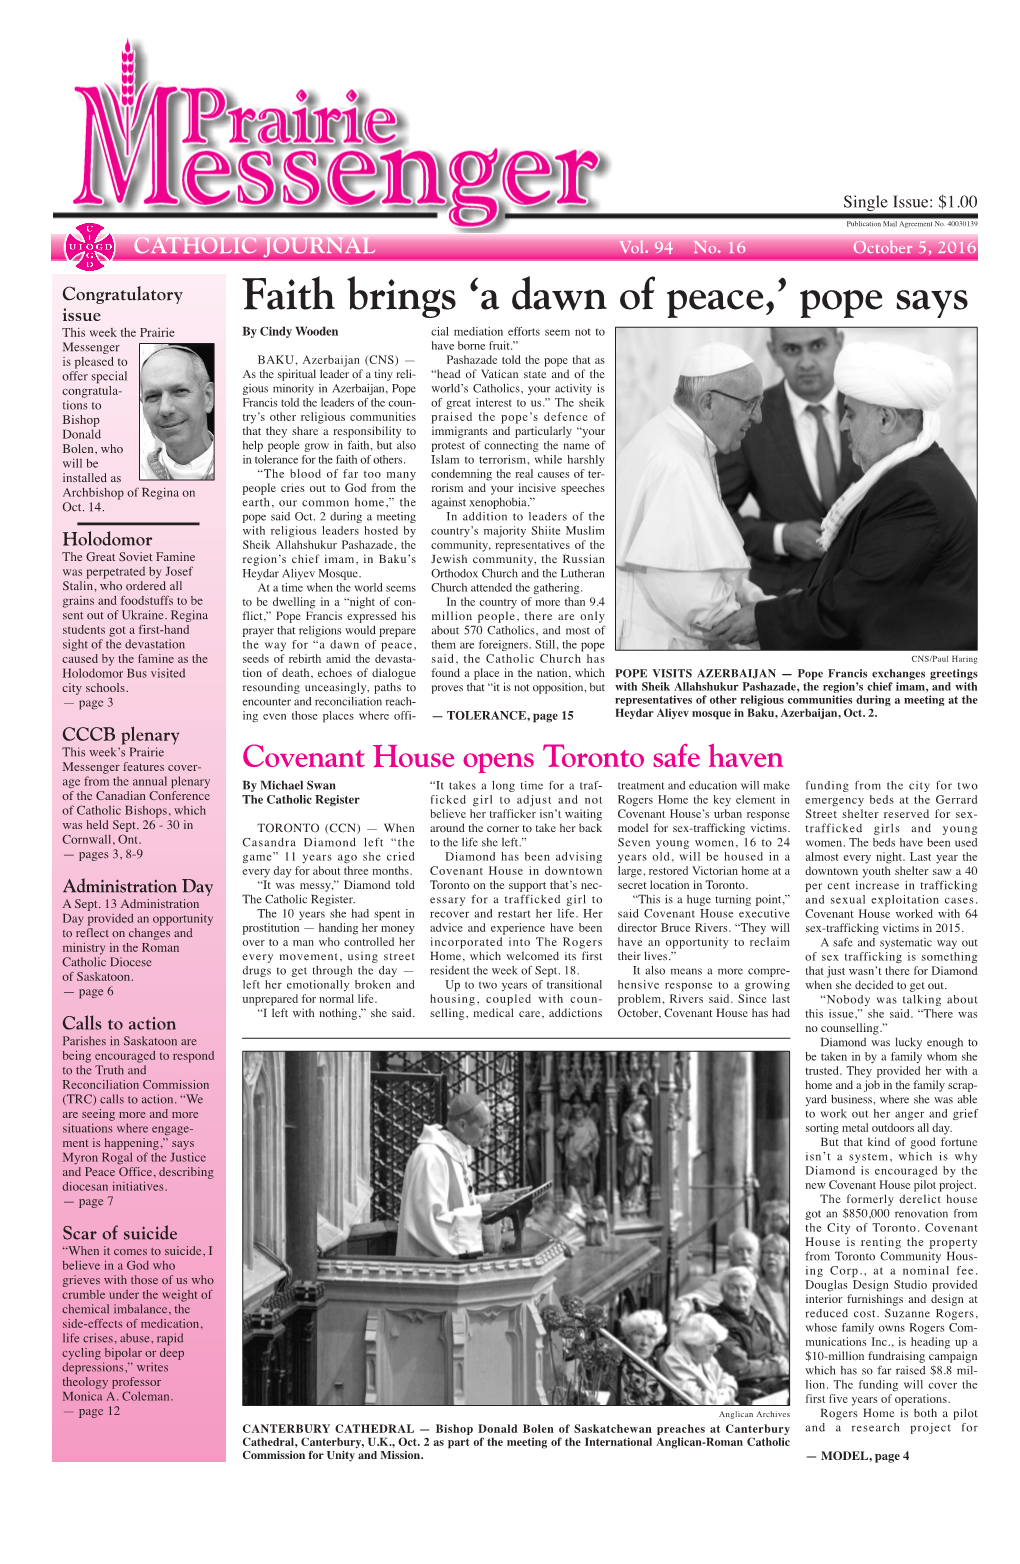 Faith Brings 'A Dawn of Peace,' Pope Says